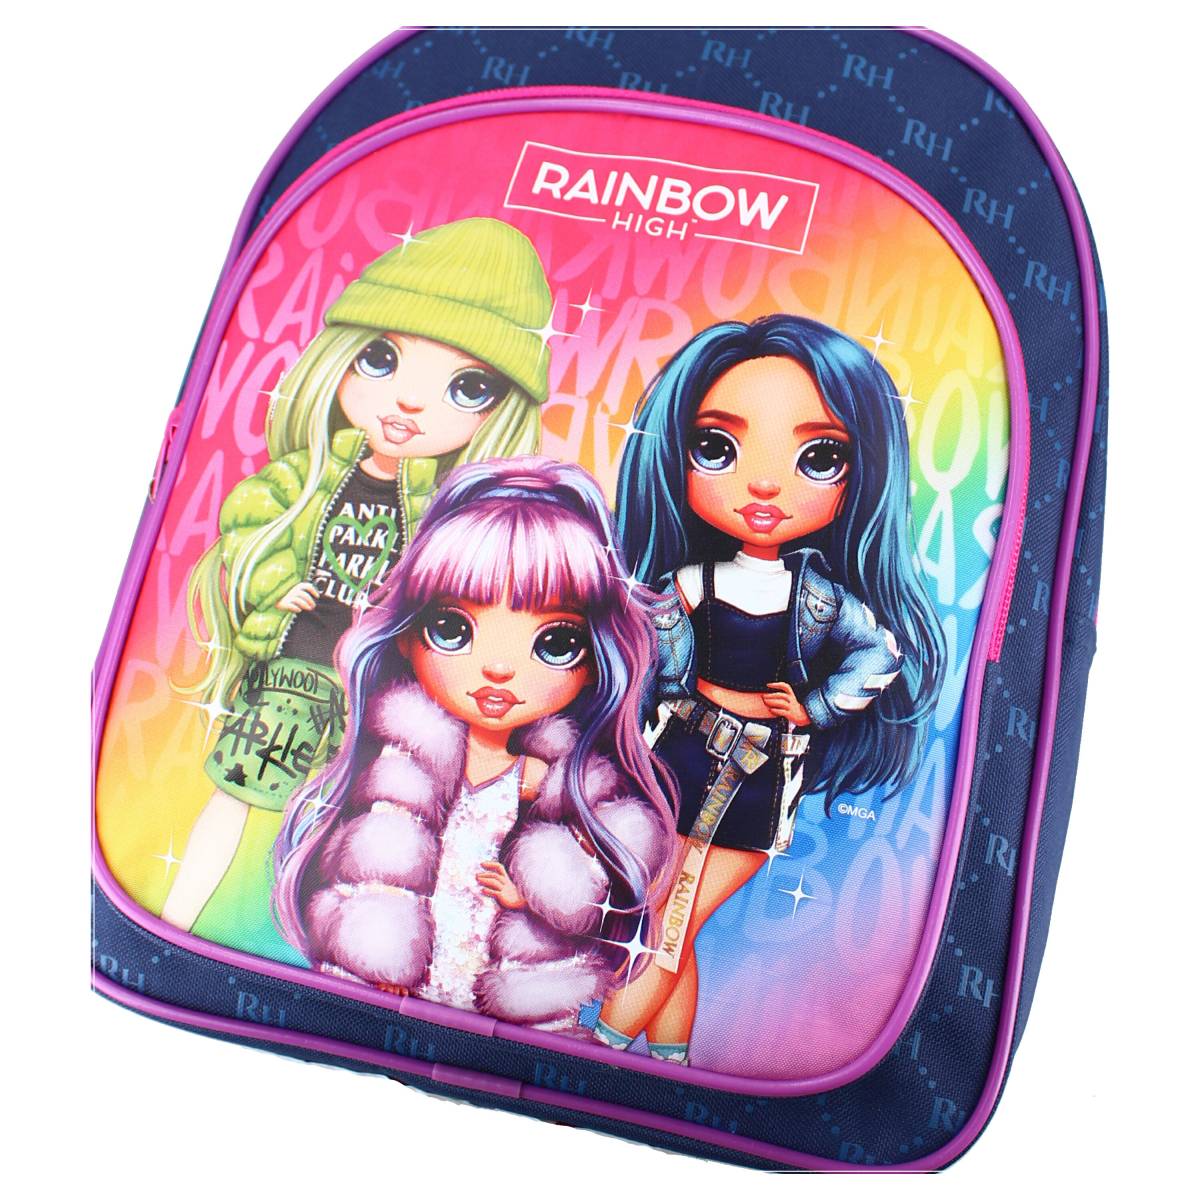 Petit sac à dos maternelle pour fille Rainbow Sparkle Club